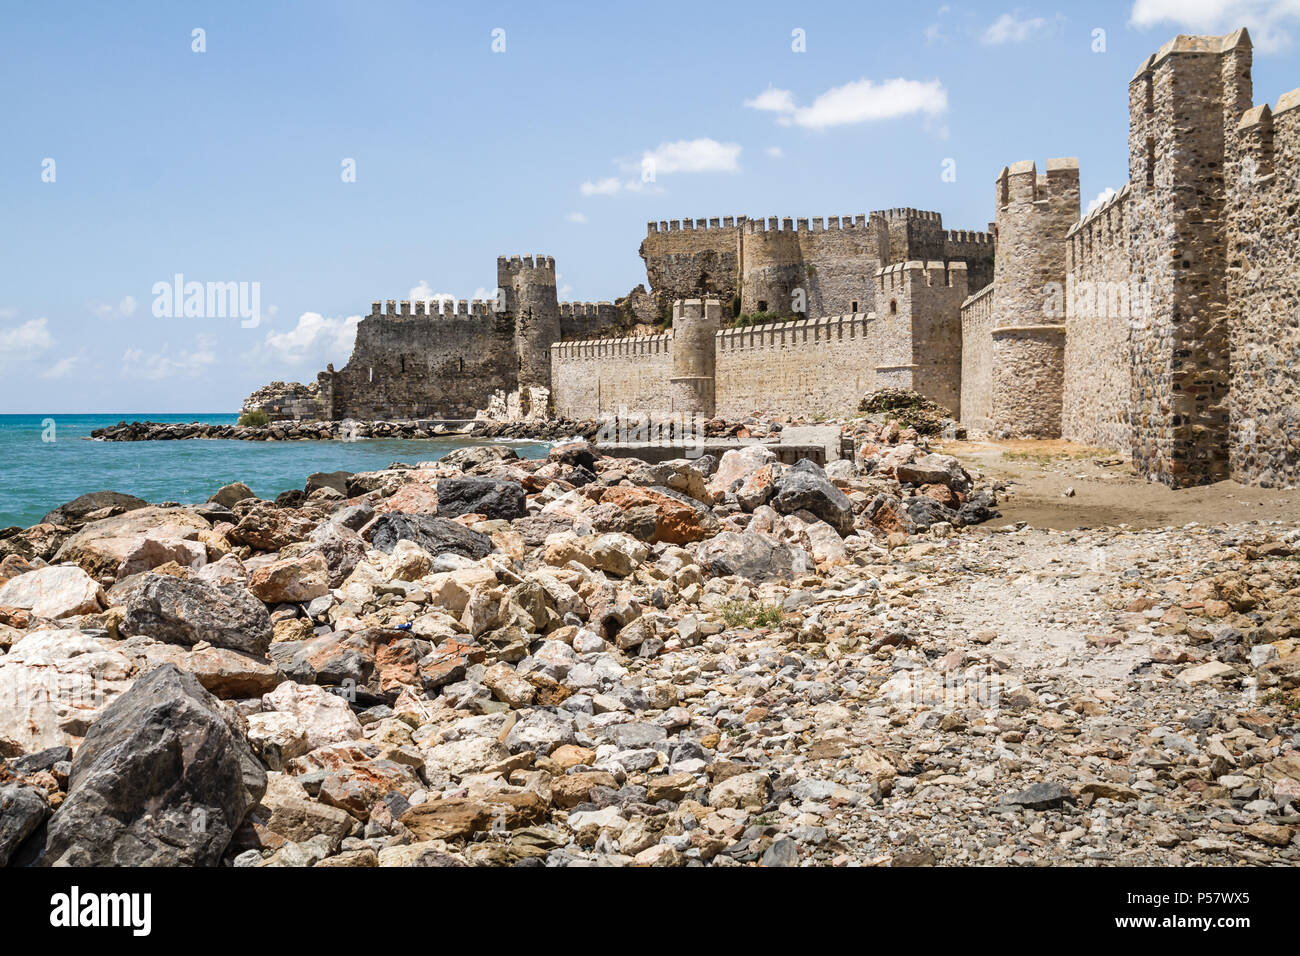 Historische Mamure Schloss in Anamur, Mersin, Türkei Stockfoto